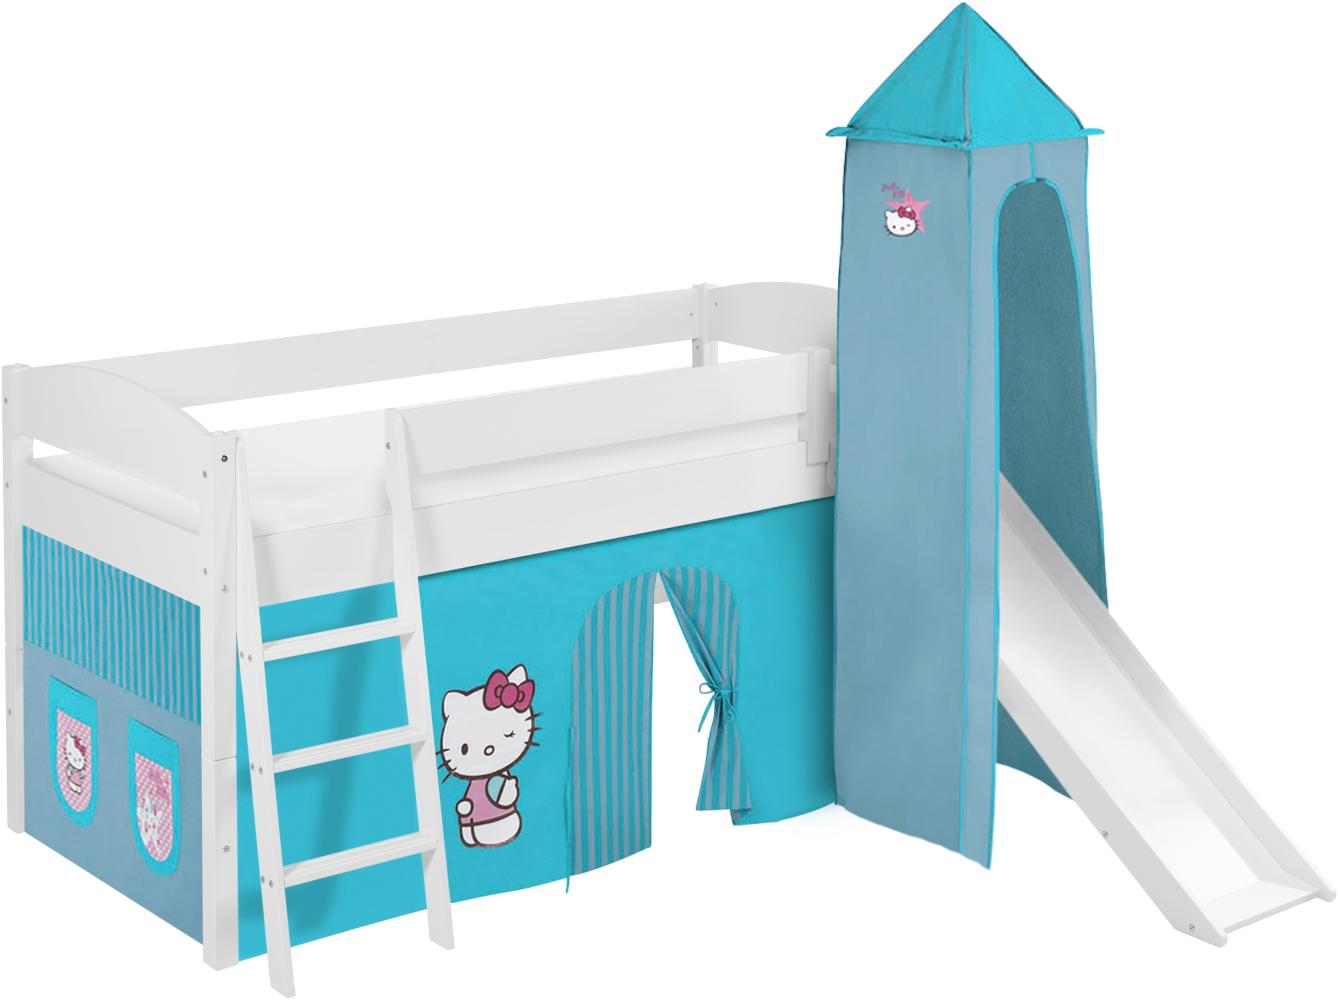 Lilokids 'Ida 4105' Spielbett 90 x 200 cm, Hello Kitty Türkis, Kiefer massiv, mit Turm, Rutsche und Vorhang Bild 1